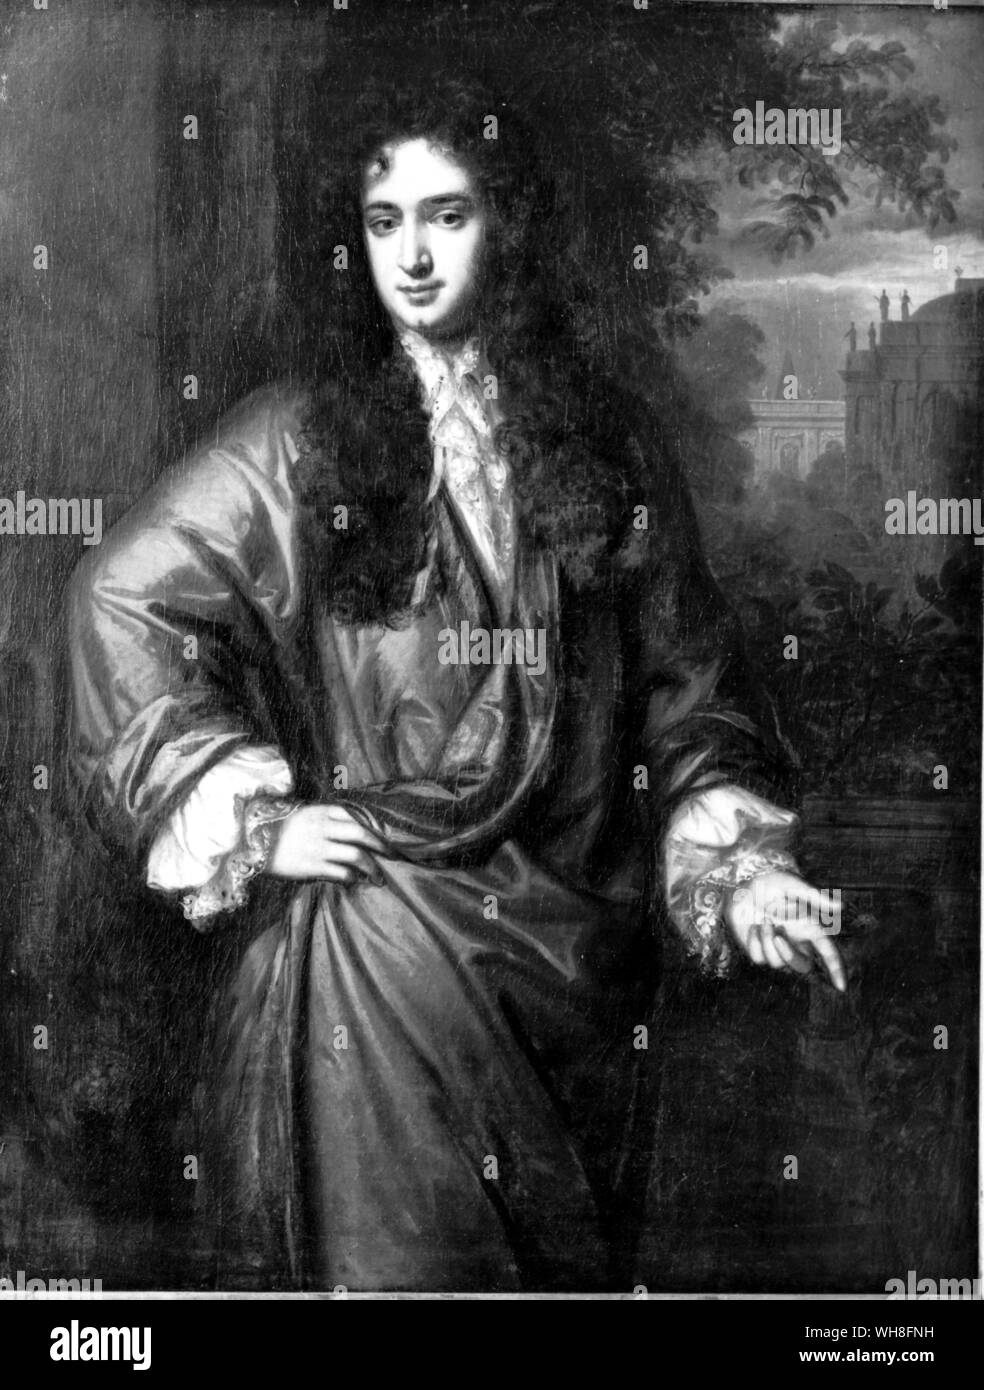 Herr Rochester. John Wilmot, zweite Earl of Rochester (1647-1680), war ein englischer Höfling und Dichter. Lord Rochester Monkey von Graham Greene, Seite 183. Stockfoto